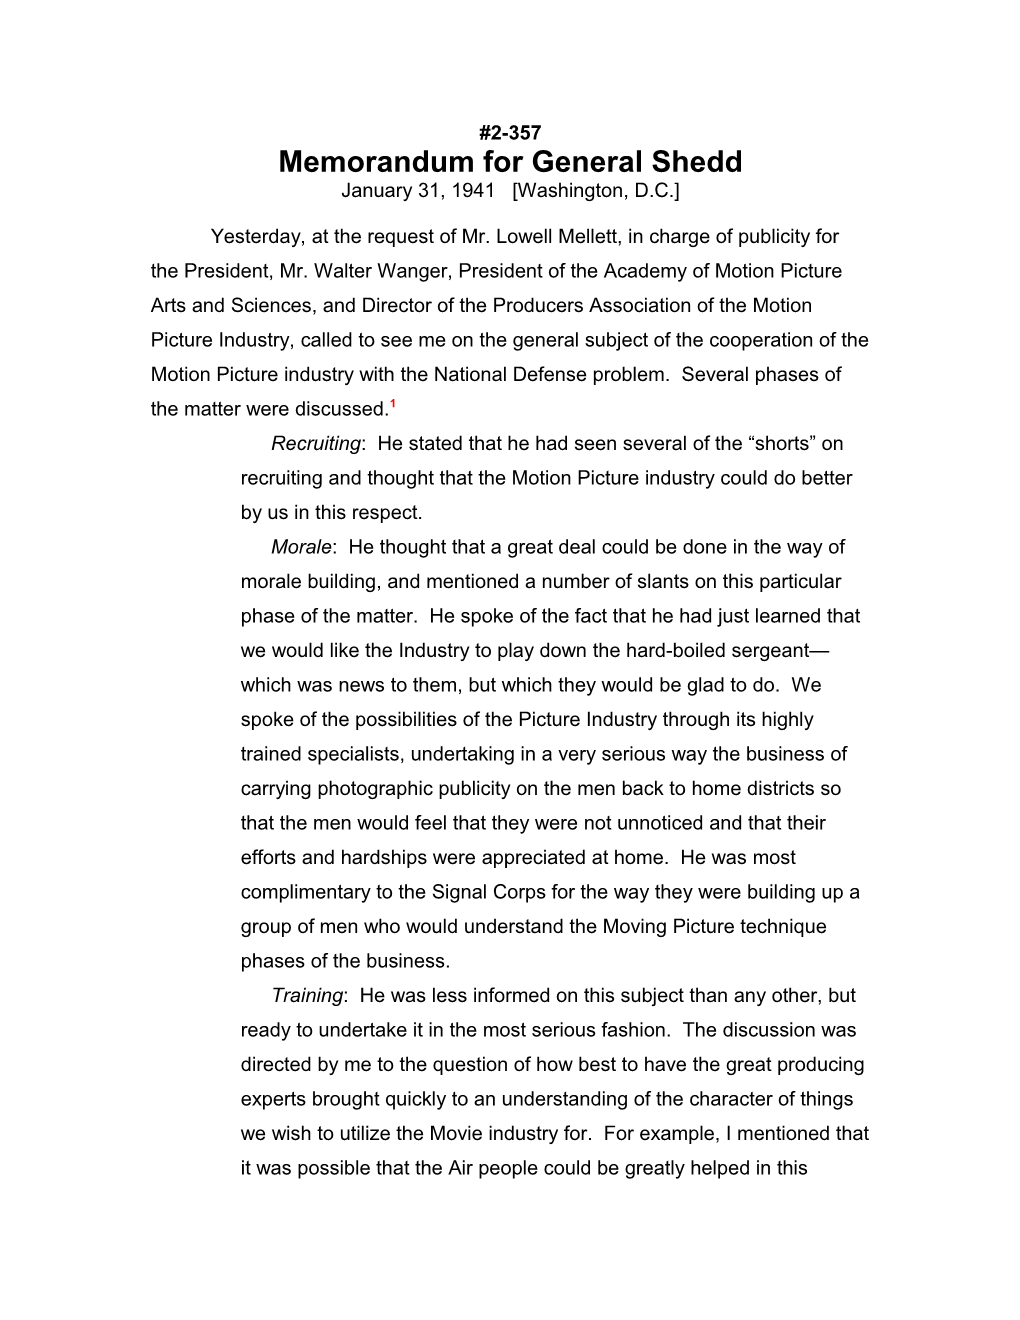 Memorandum for General Shedd